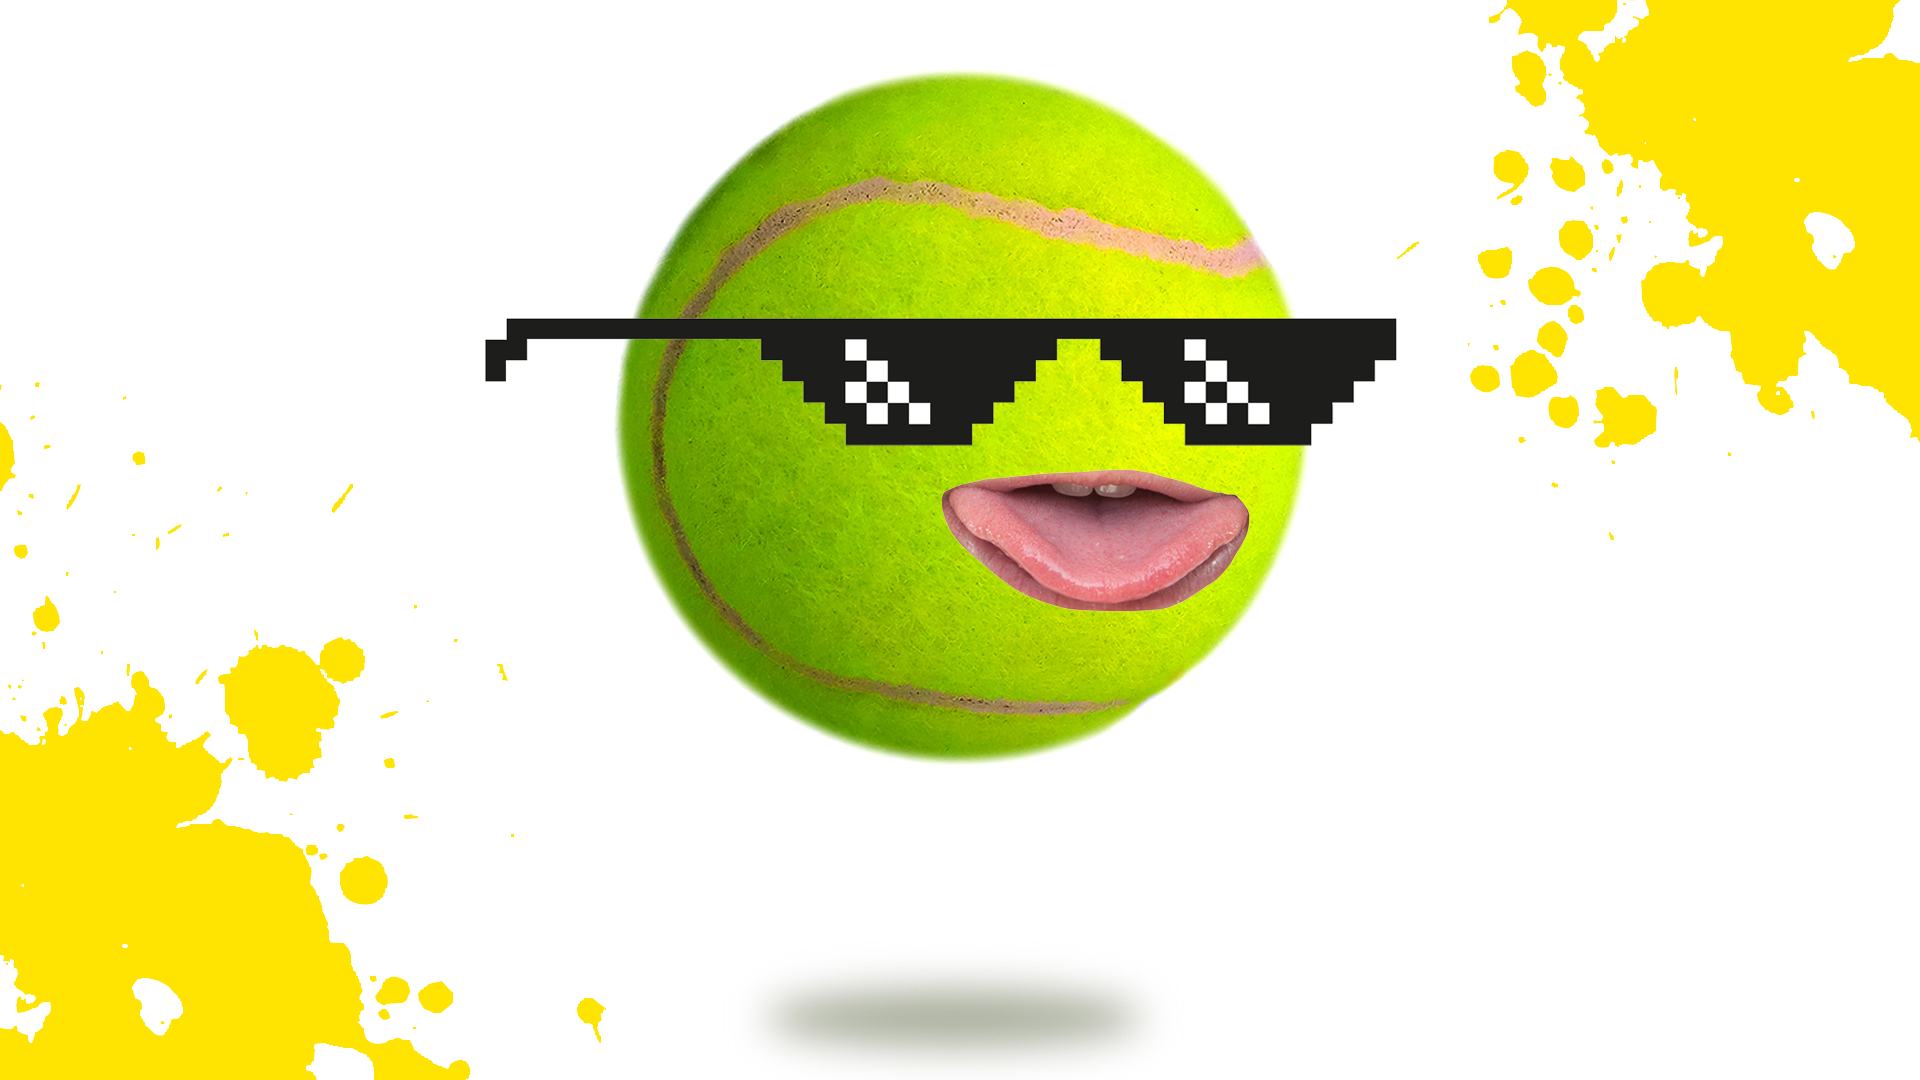 A tennis ball wearing sunglasses